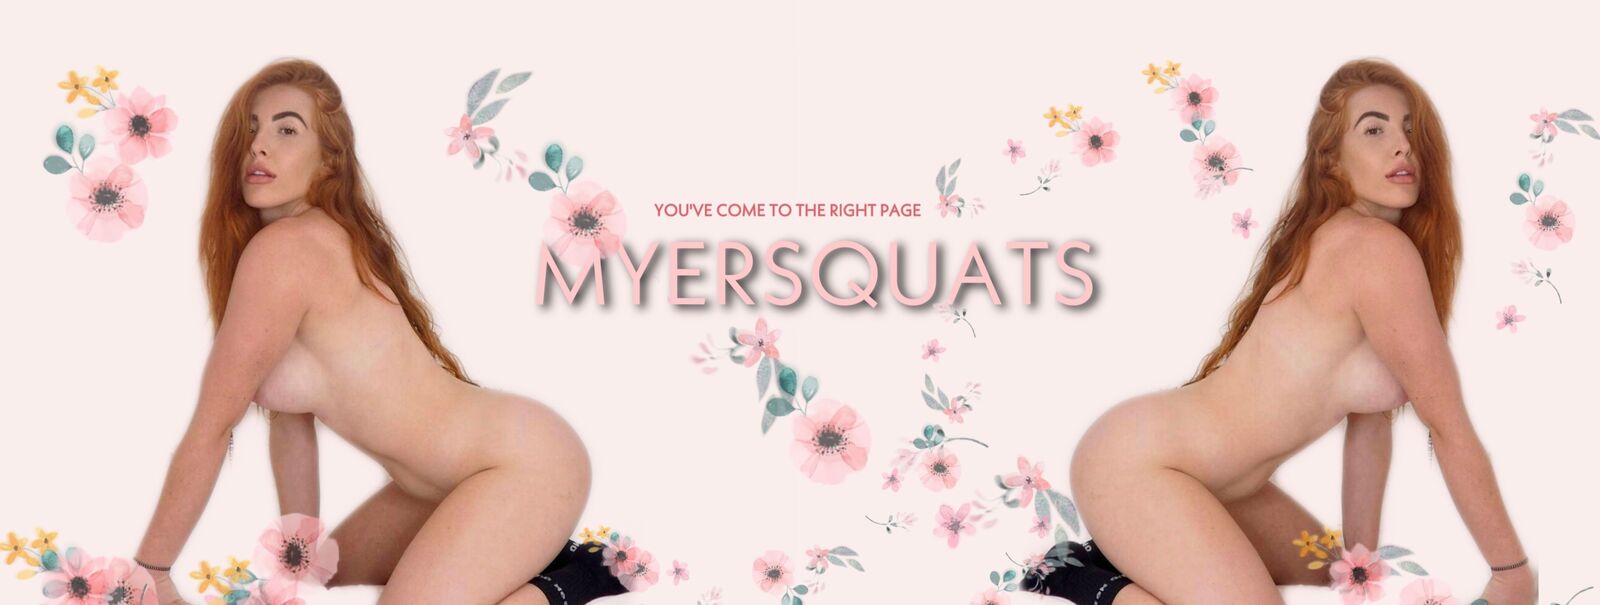 myersquats